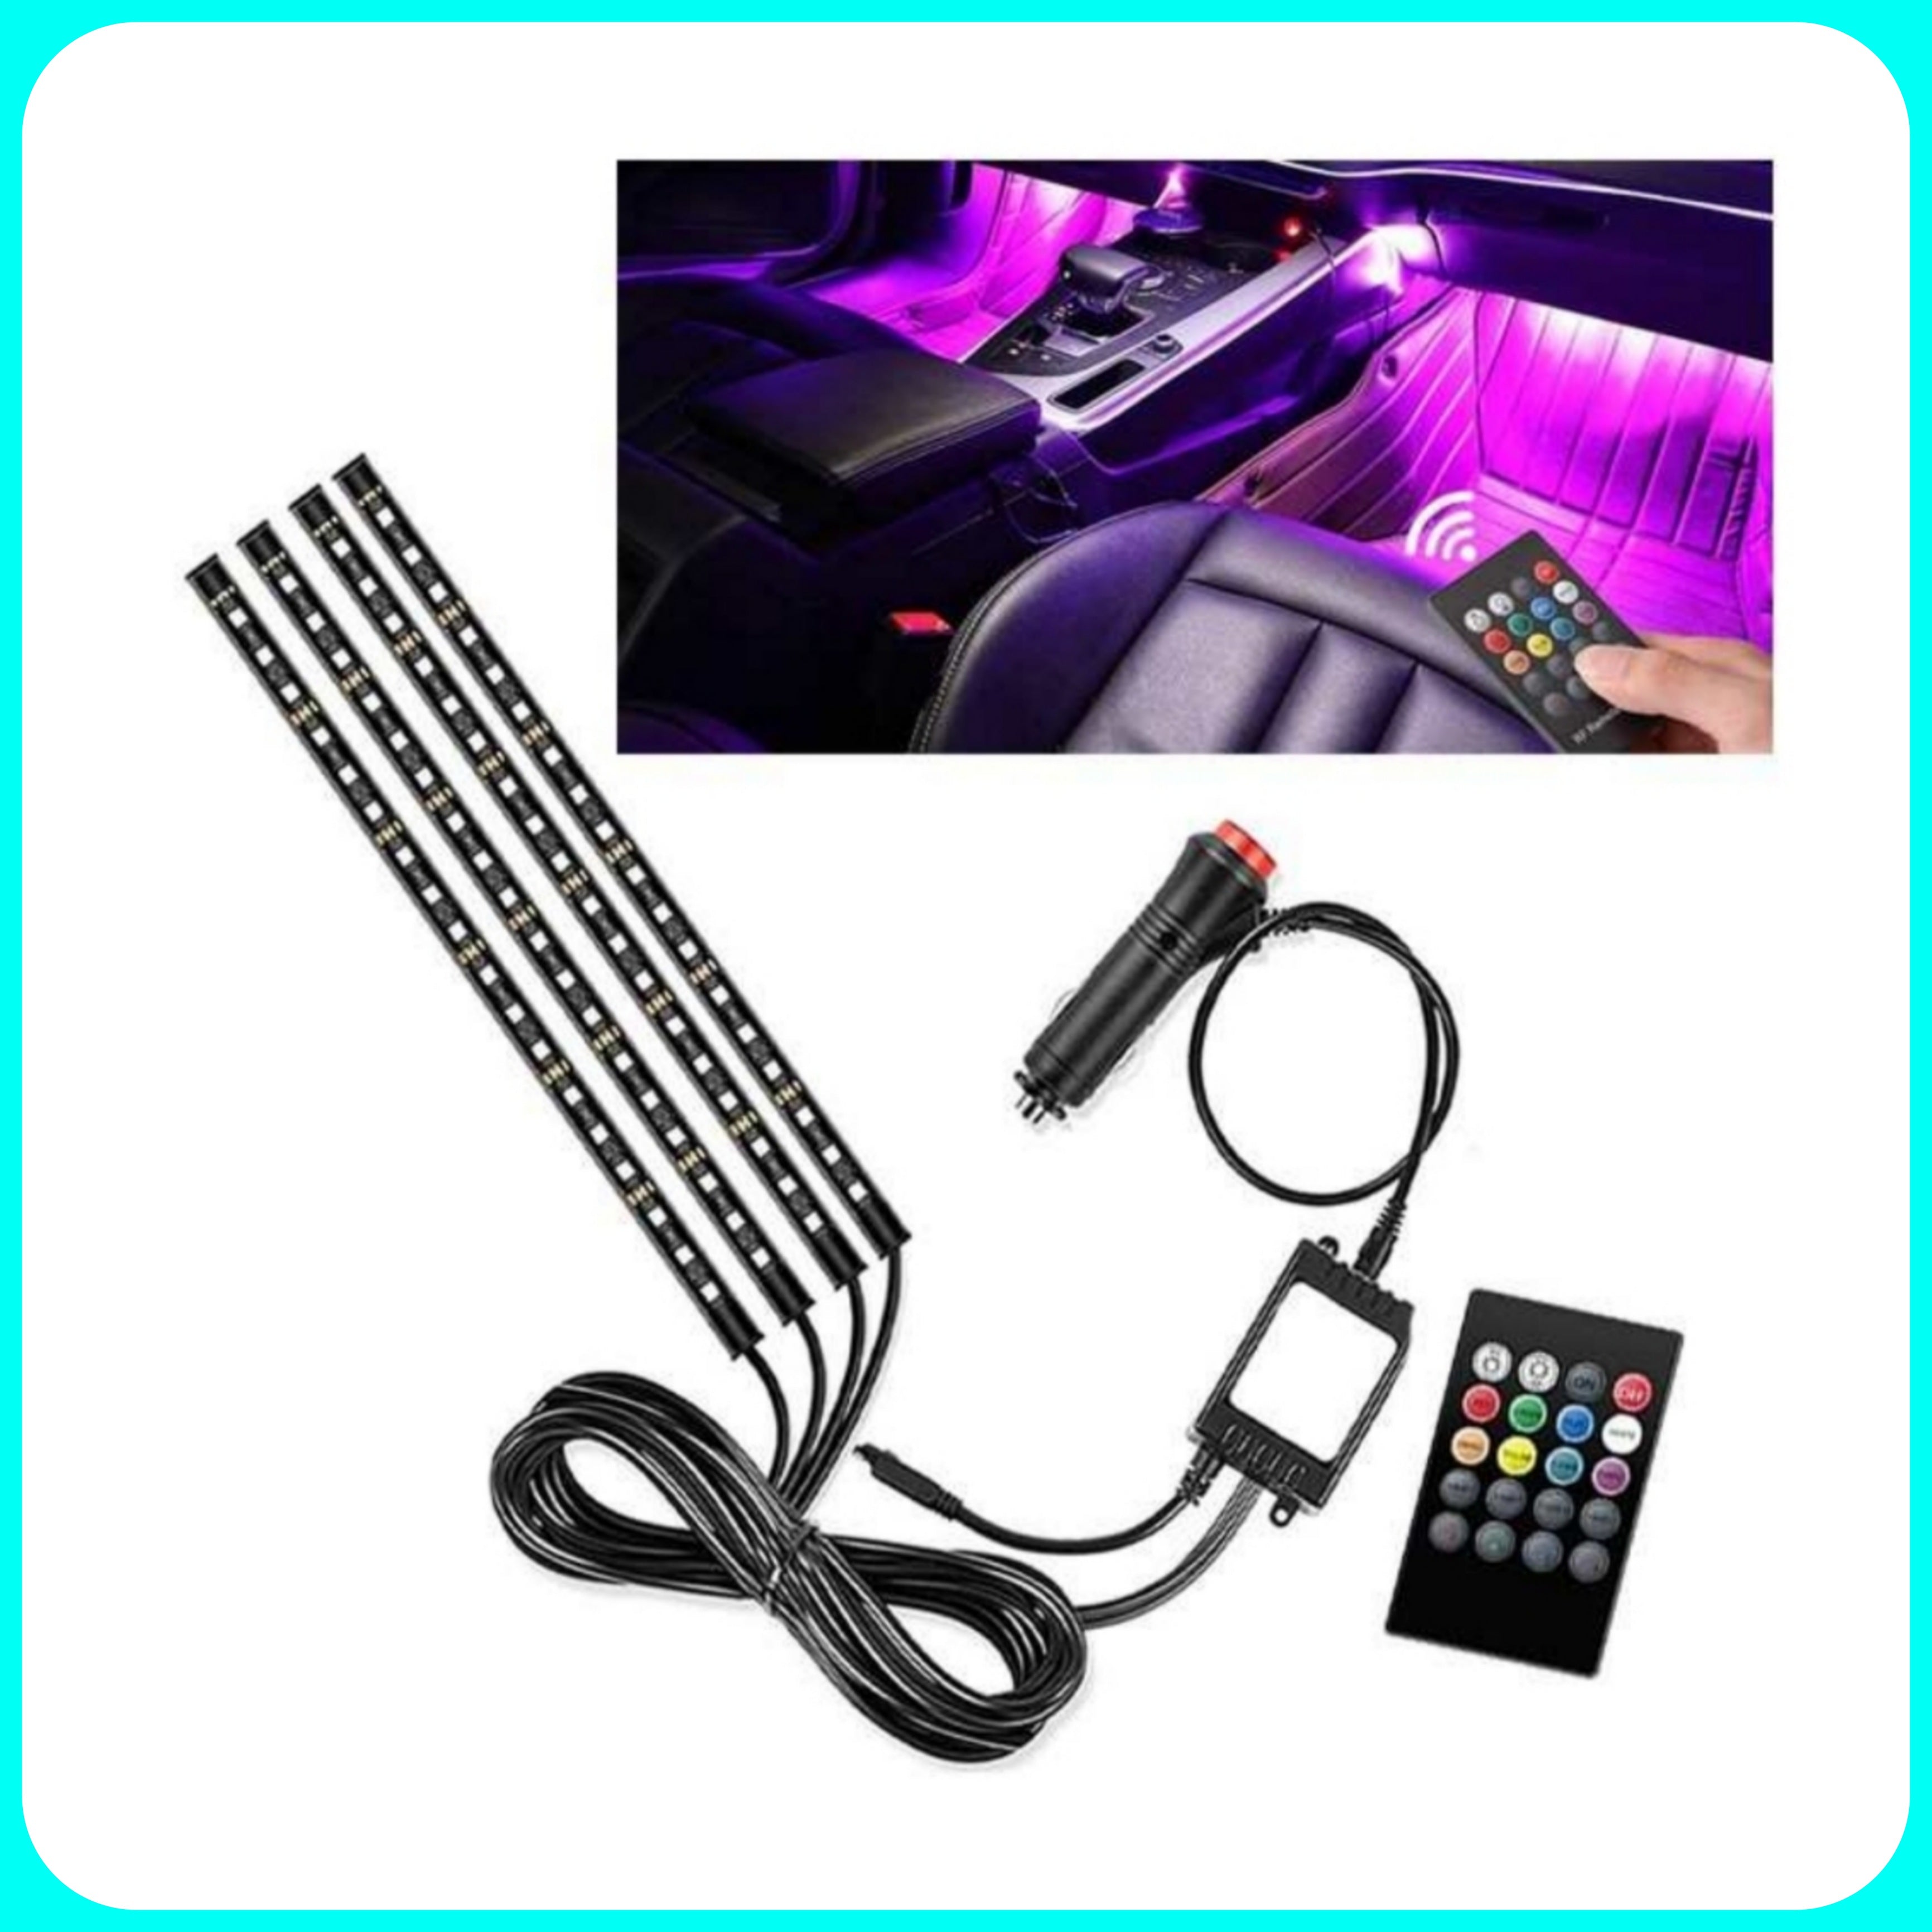 TABEN Kit di illuminazione ambientale per interni auto USB 3 metri Fibra  ottica RGB 16 milioni di colori Sincronizzazione musicale Telecomando RF e